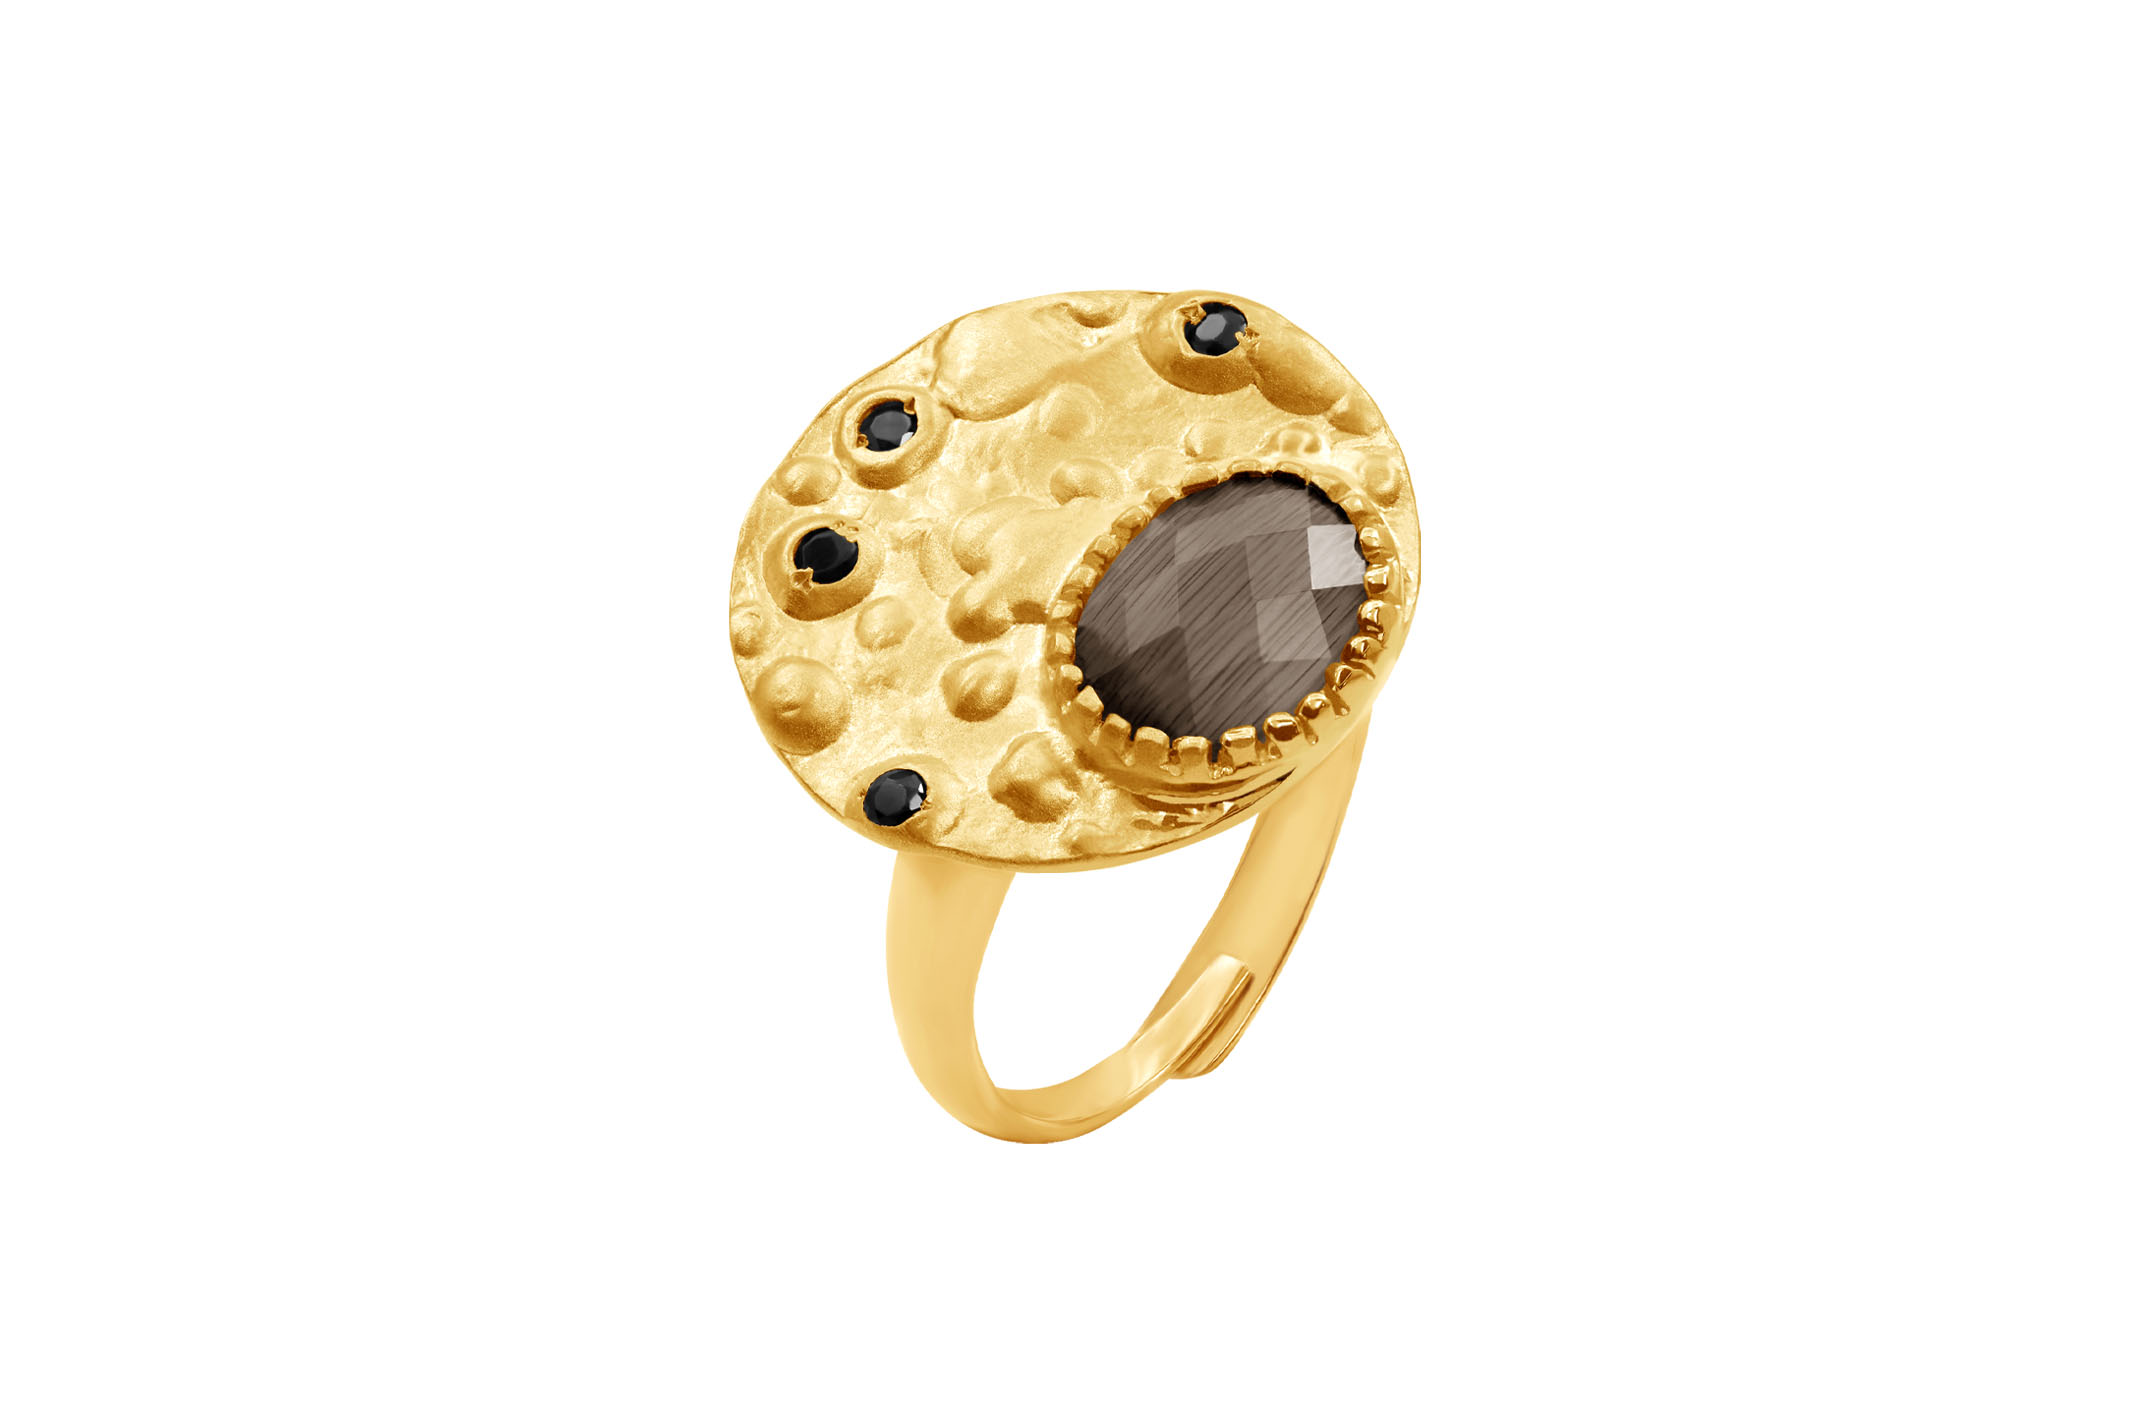 Joia: anel;Material: prata 925;Peso: 4.3 gr;Pedras: zircónias;Cor: amarelo;Medida: ajustável;Género: mulher